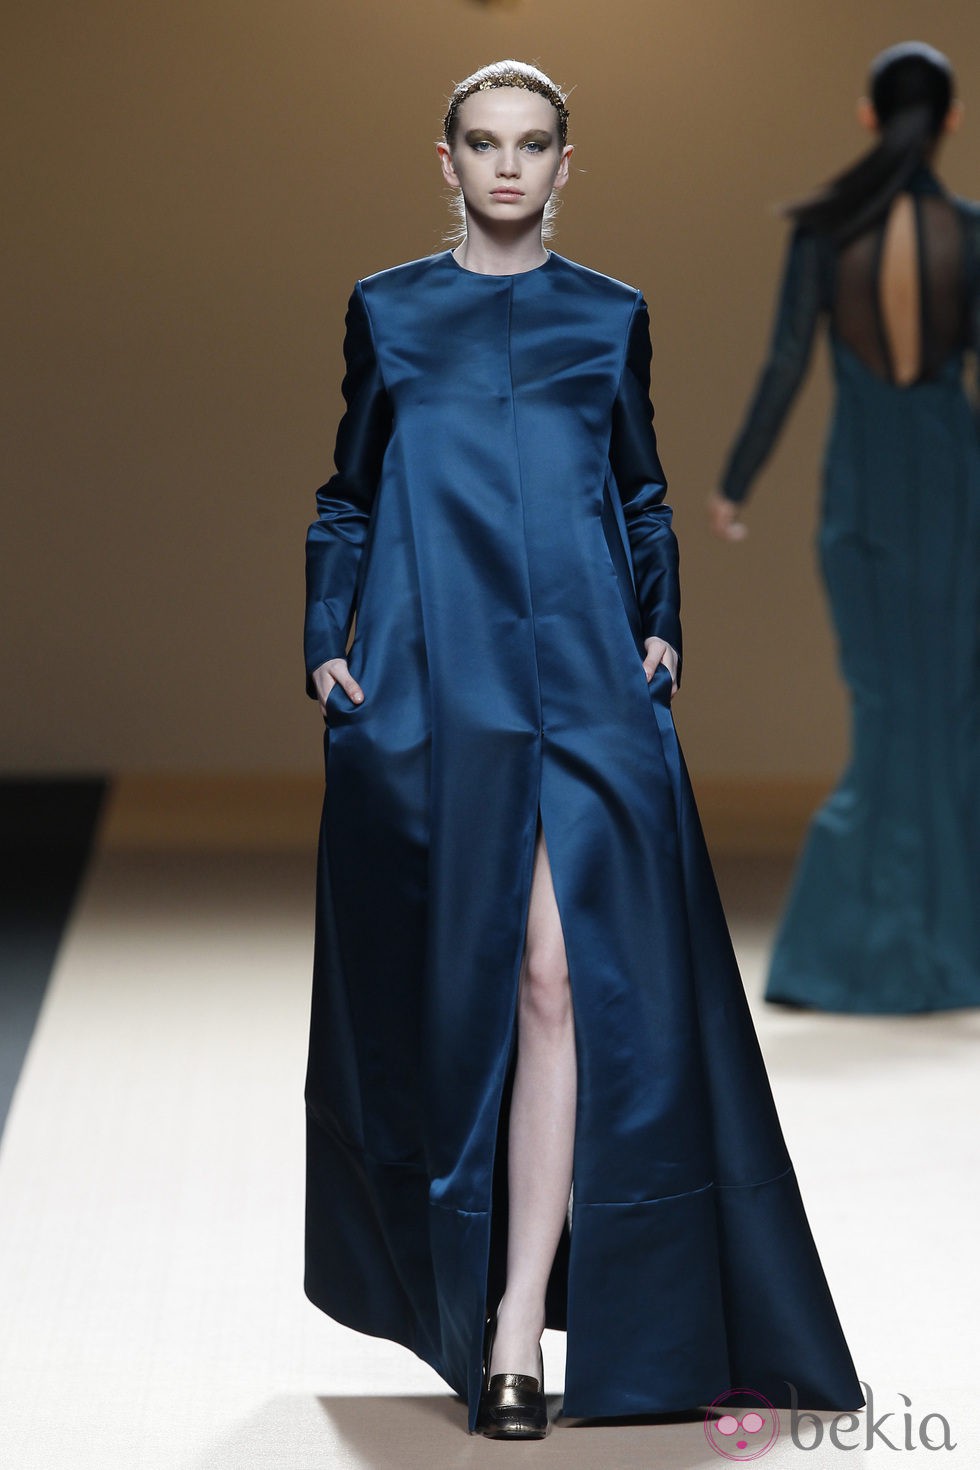 Desfile de Jesus del Pozo en la Fashion Week Madrid: vestido túnica metalizada azul